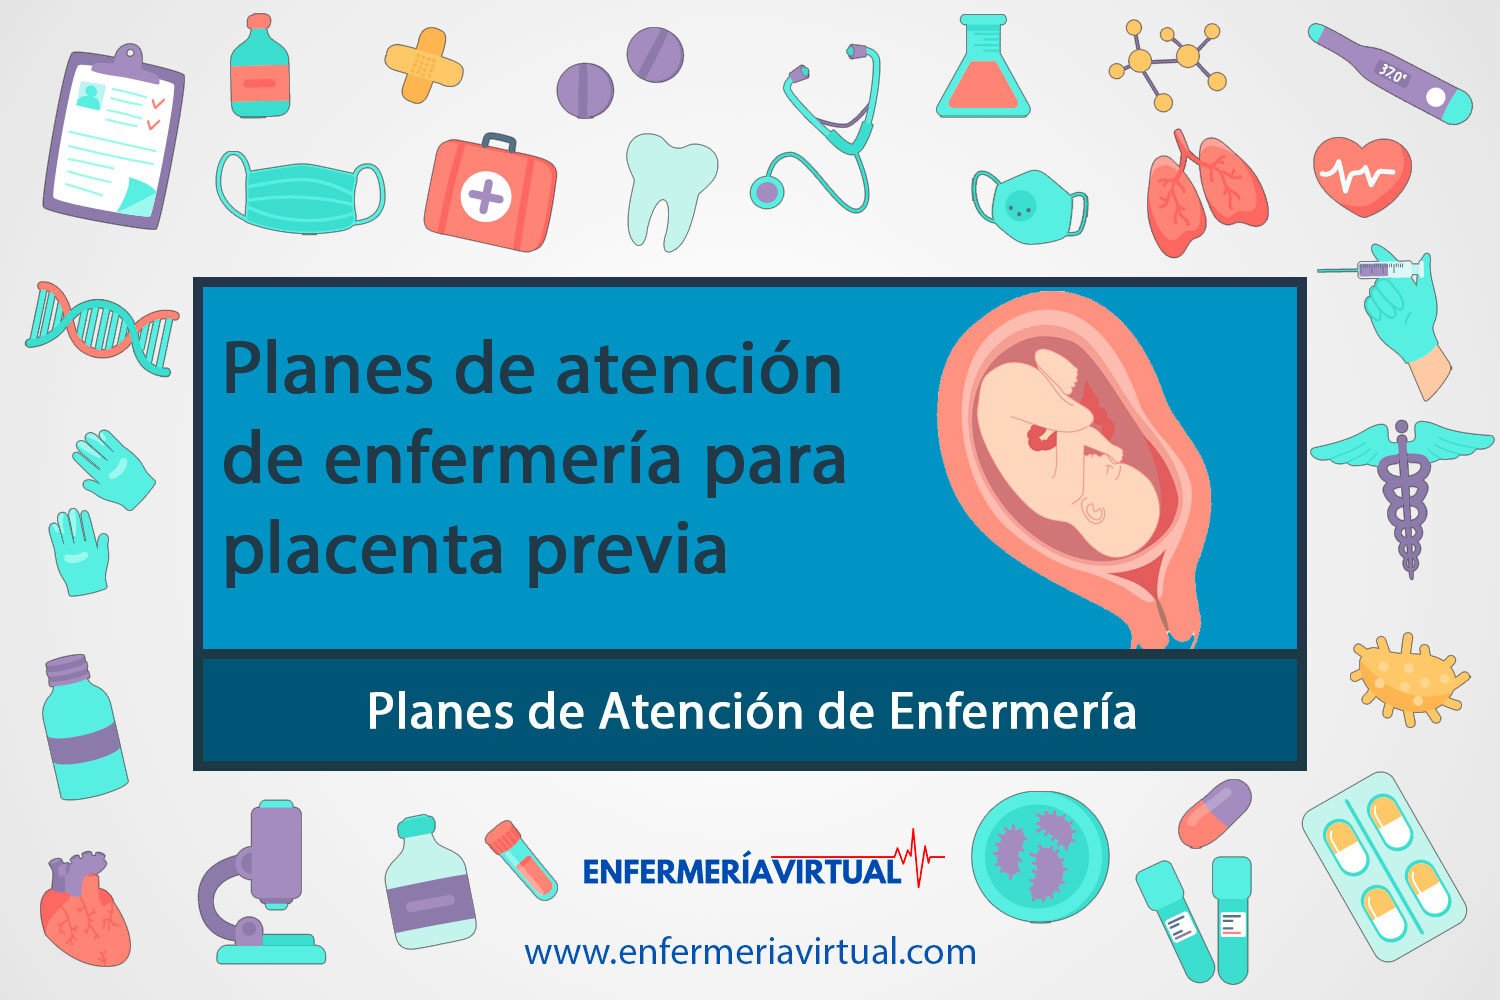 Planes de atención de enfermería para placenta previa